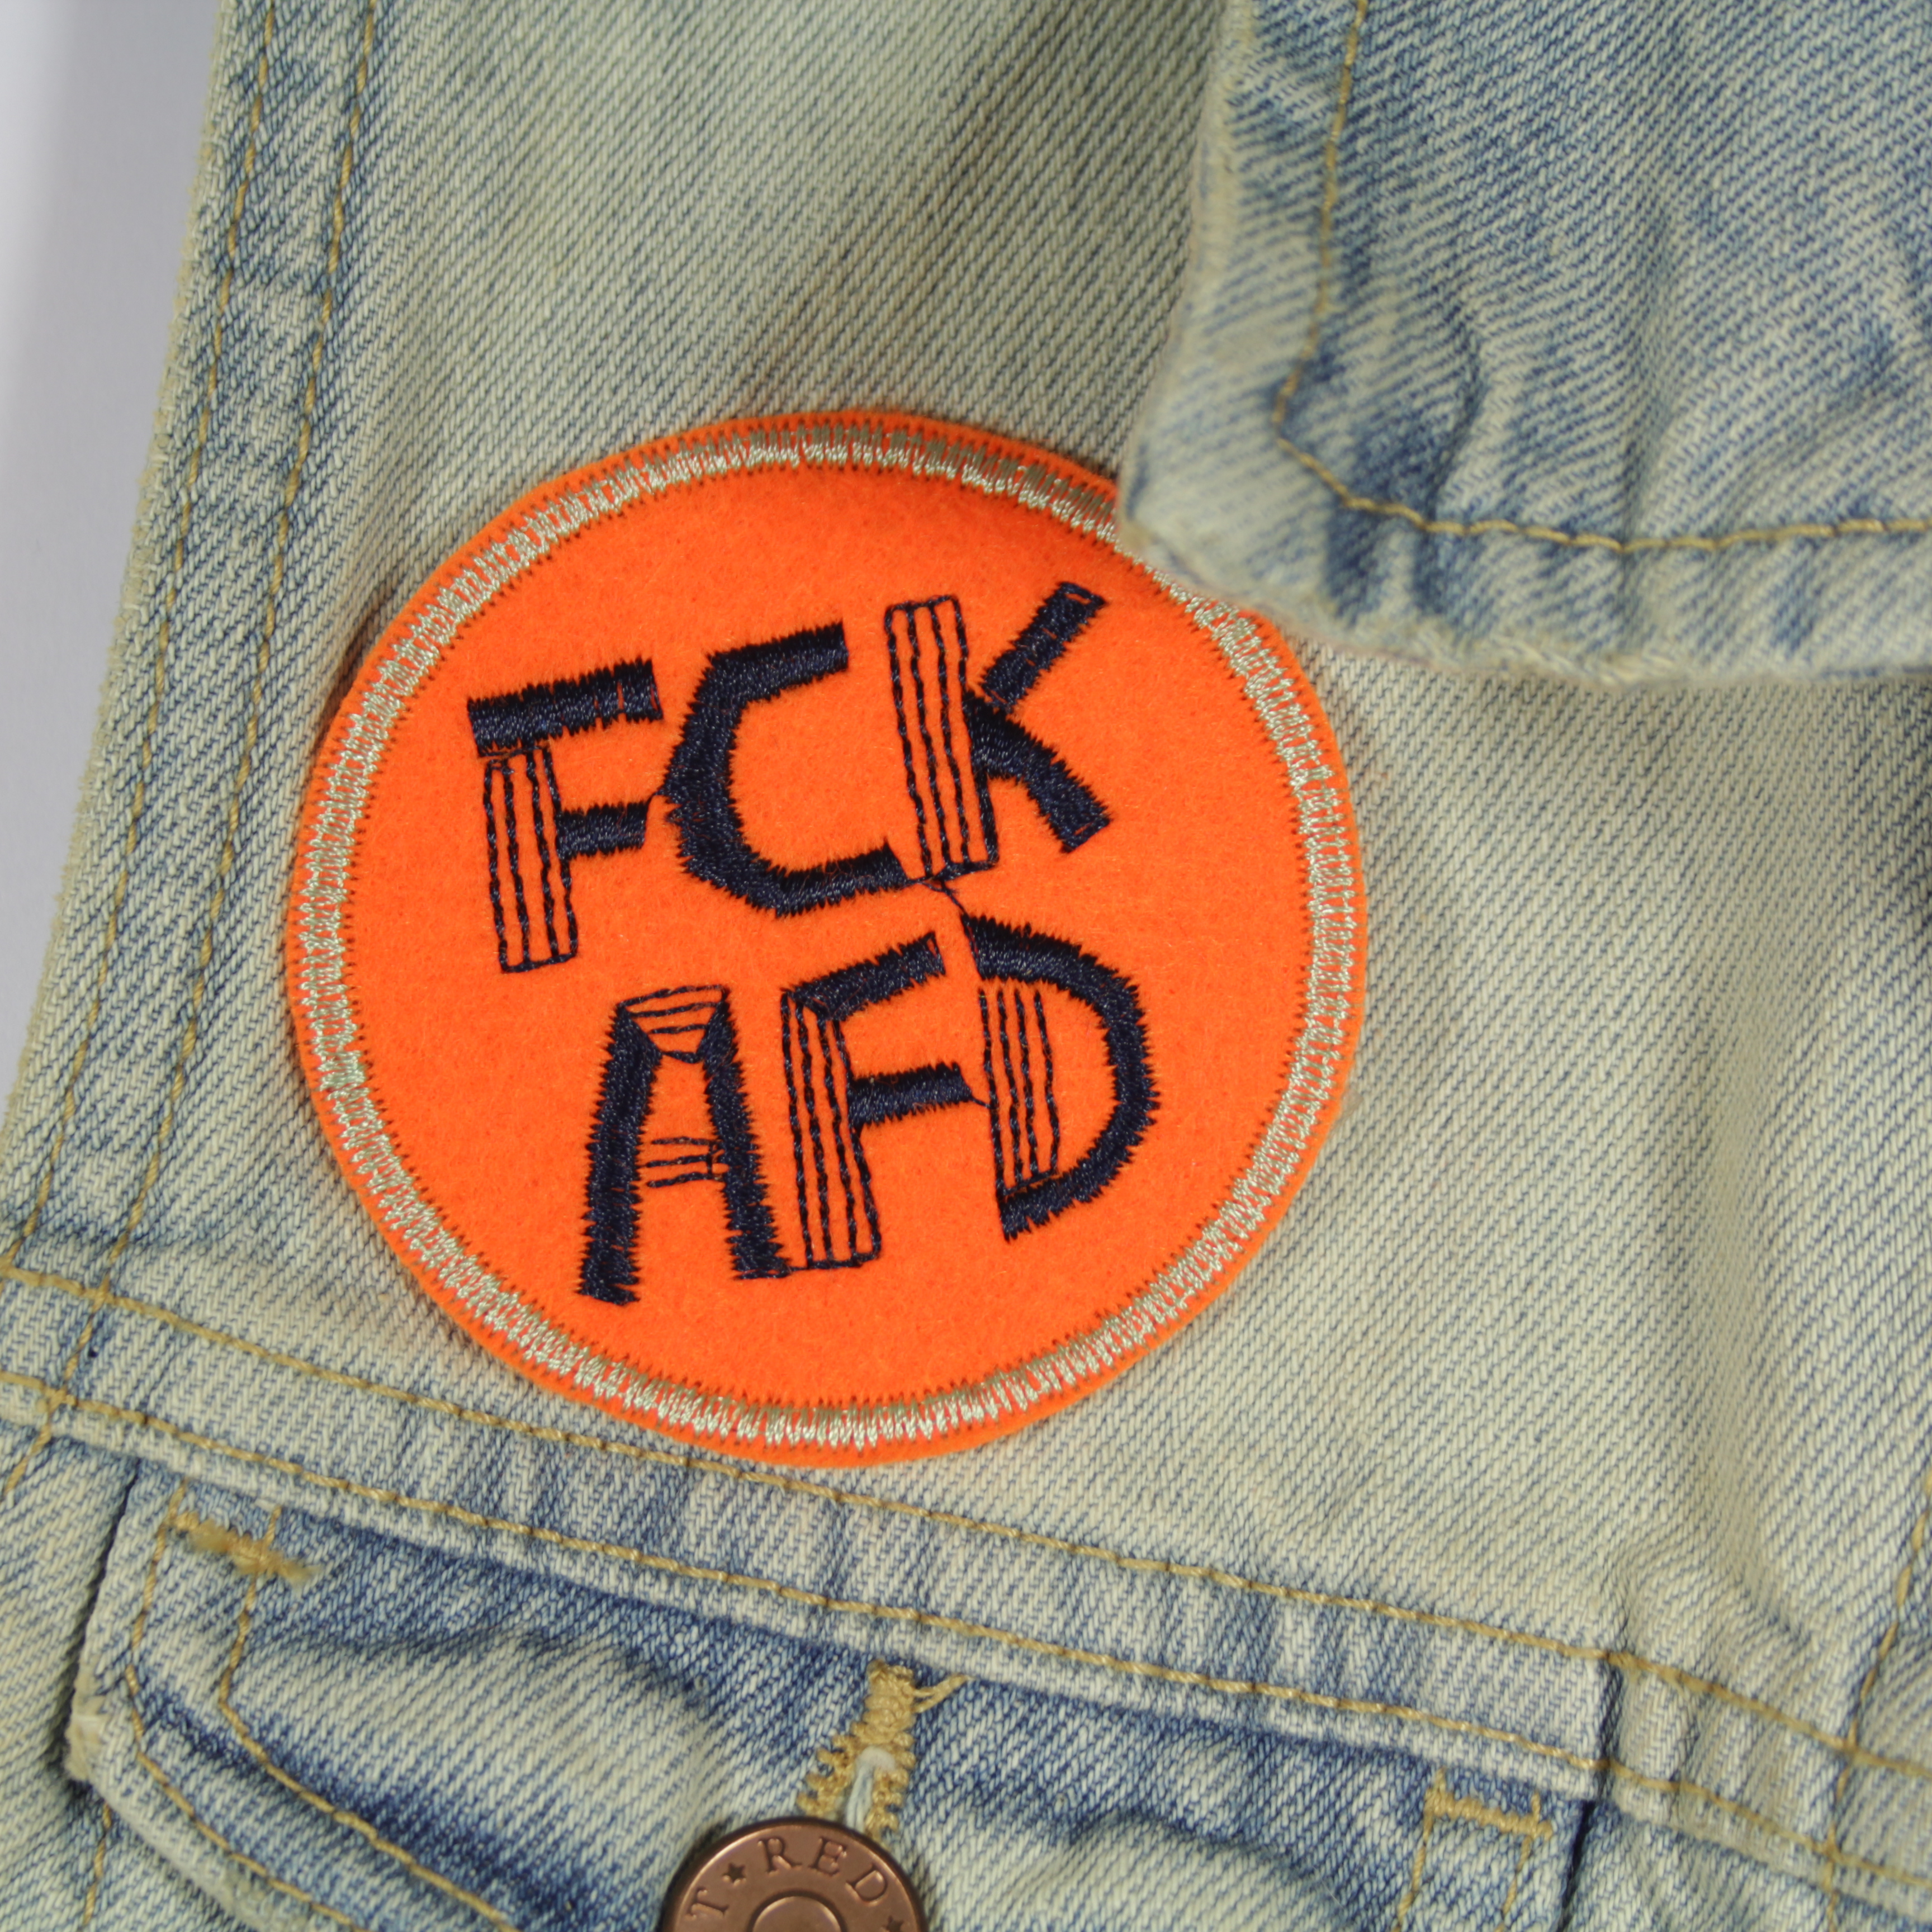 Jeansjacke mit FCK AFD Aufnäher individualisiert